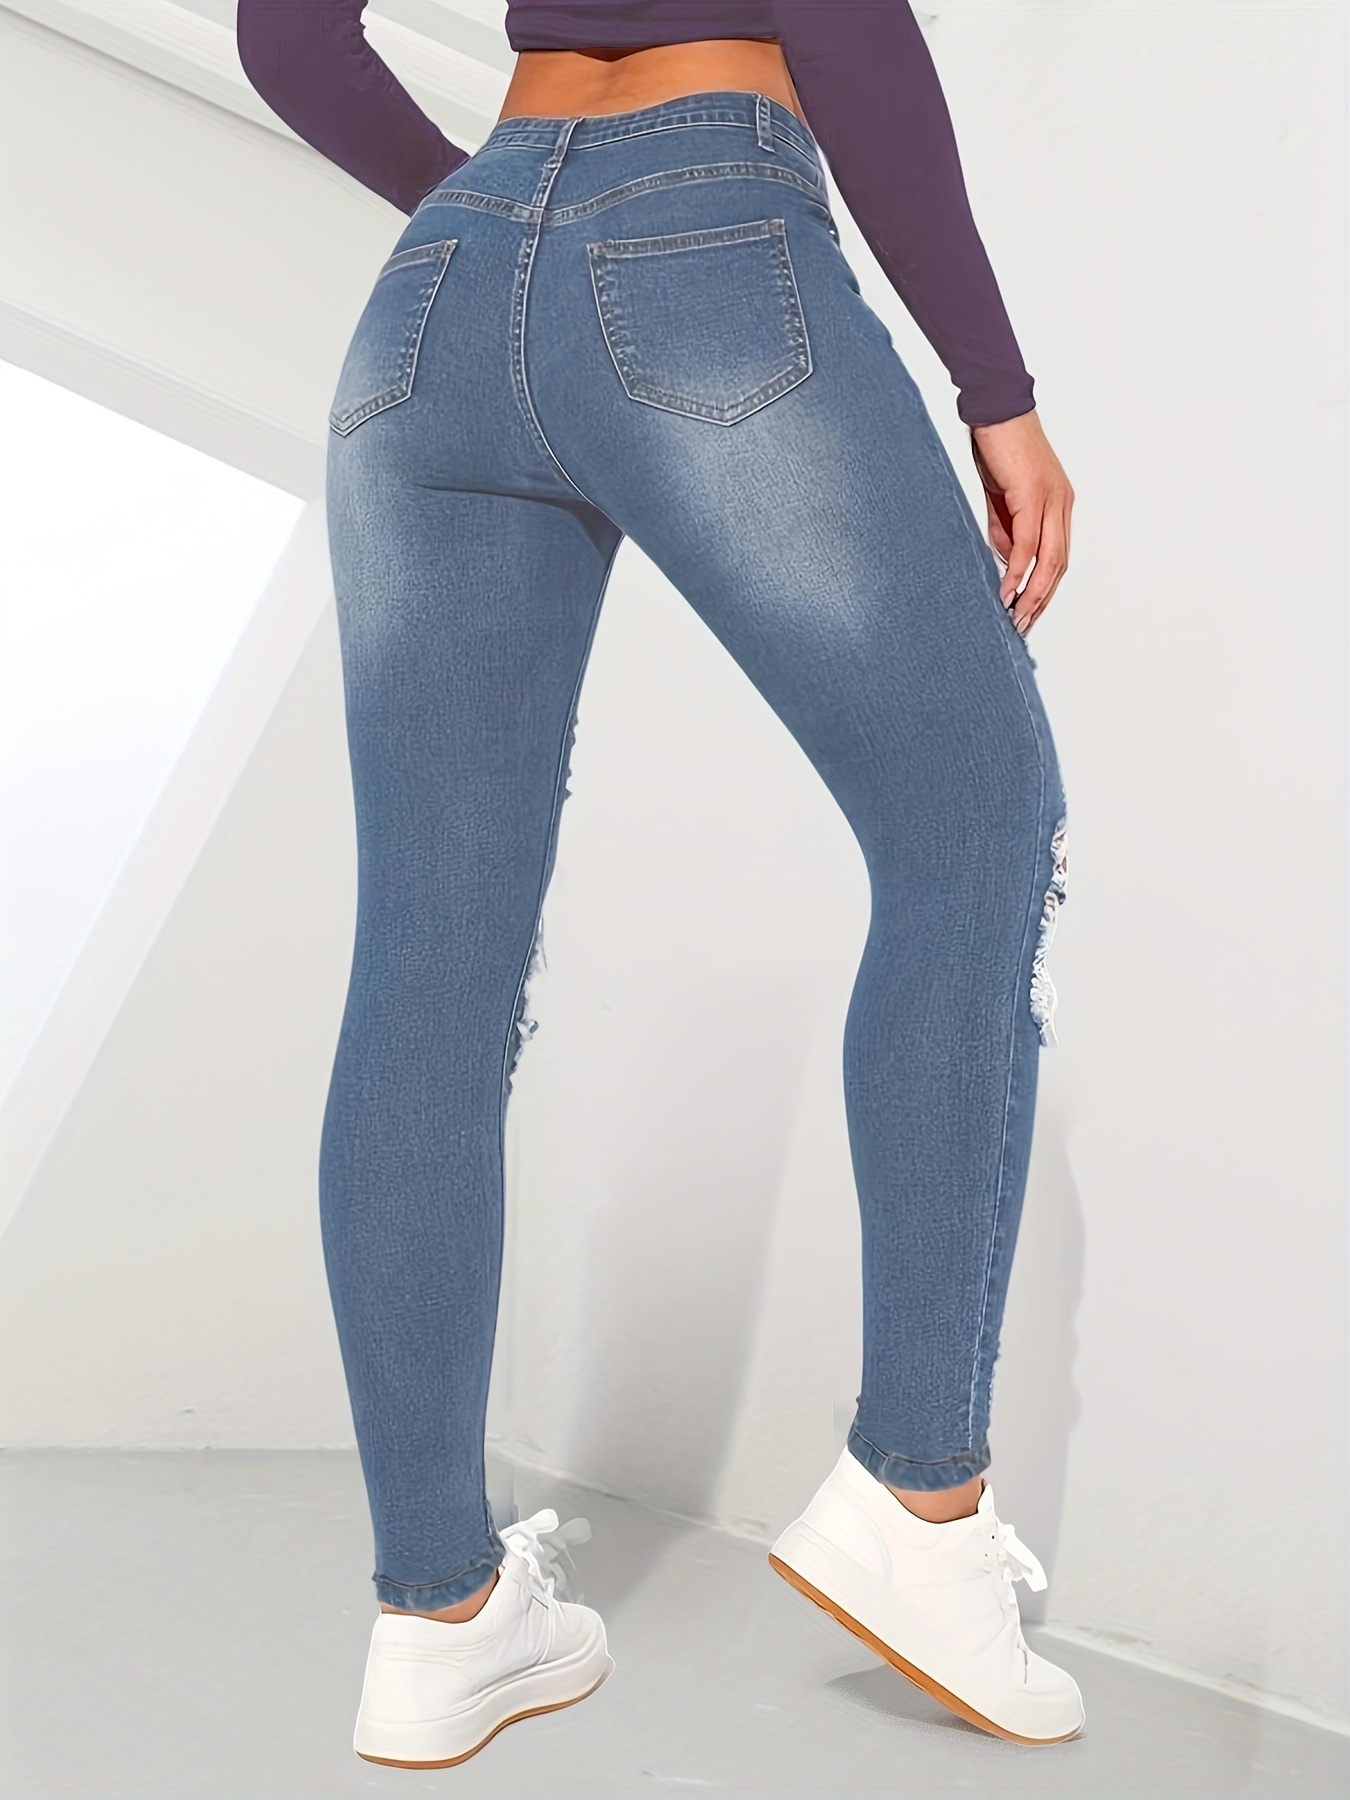 Jeans ajustados rasgados ajustados, pantalones de mezclilla desgastados  elásticos con bolsillos oblicuos, jeans y ropa de mezclilla para mujer